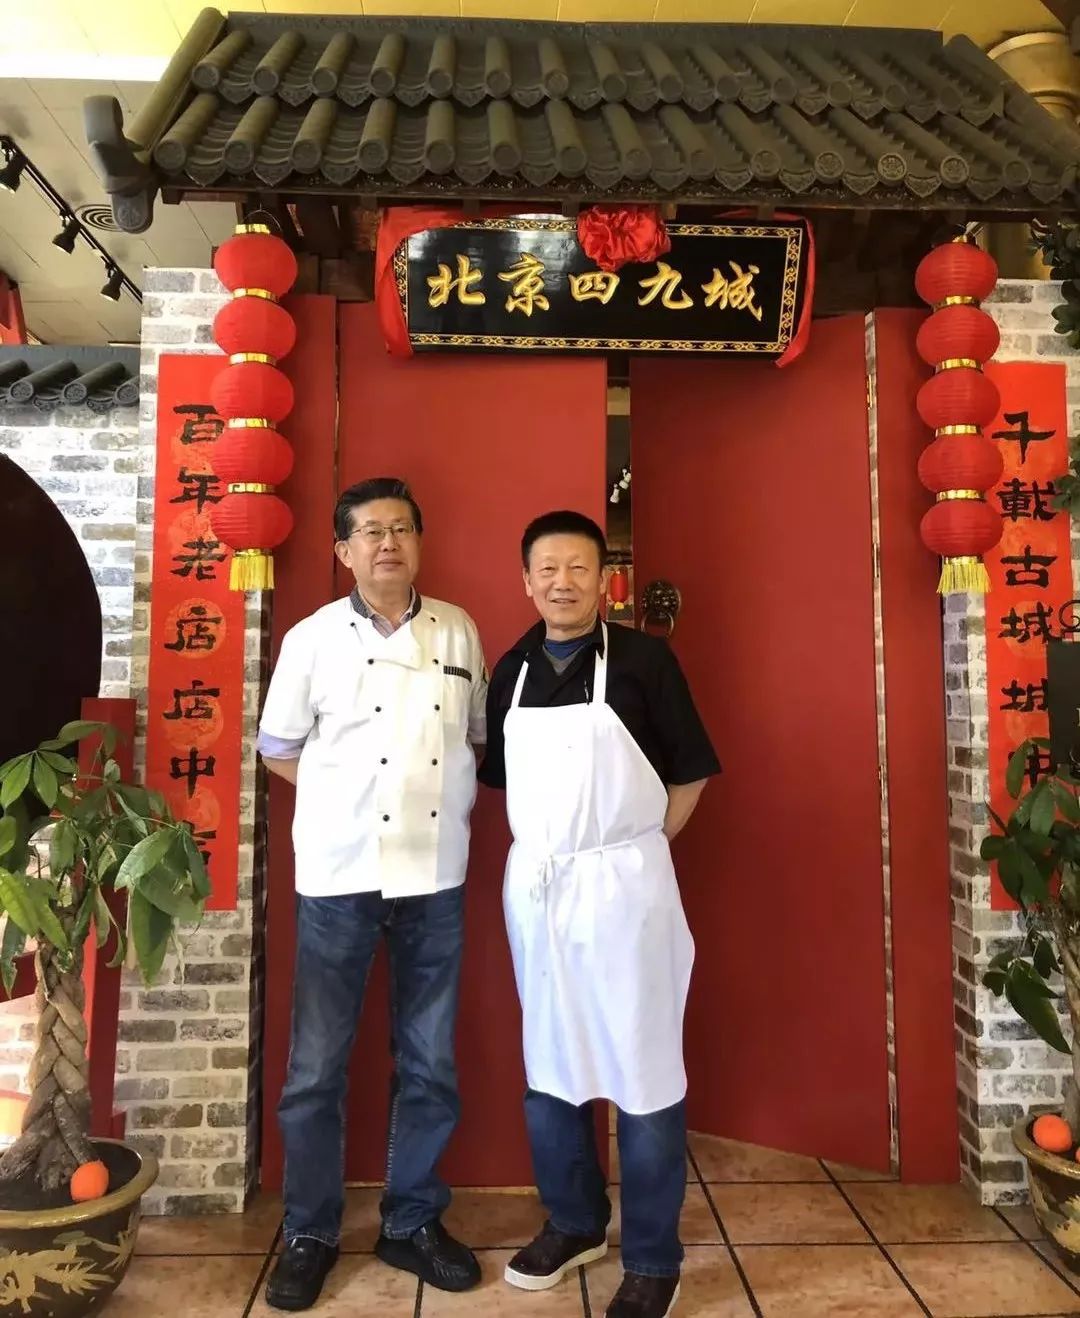 中餐通讯》专业的餐饮媒体-【访谈】《百年杏香》百年老店的店中店 